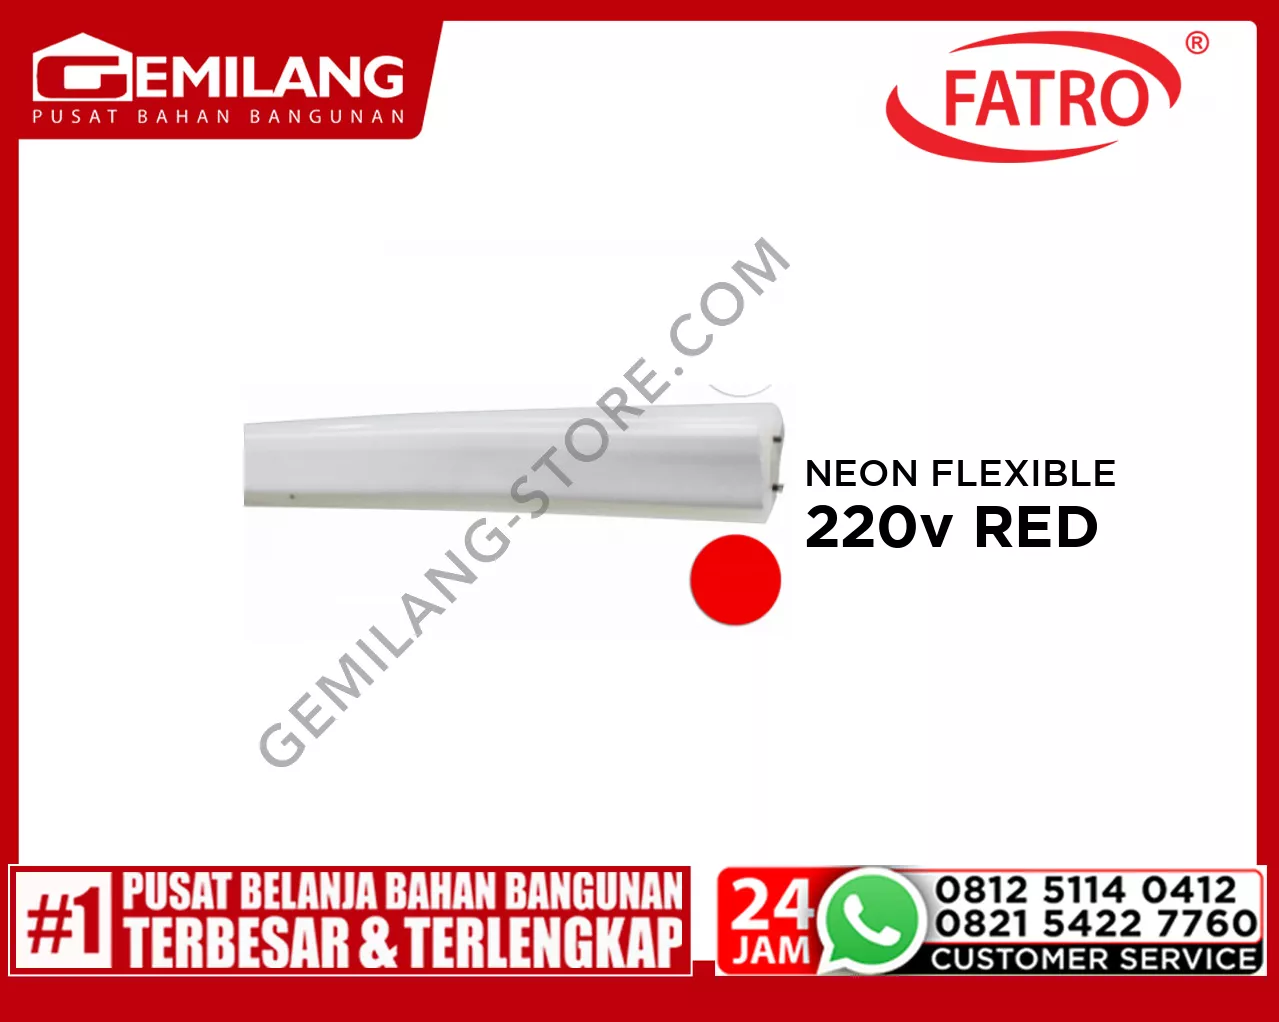 FATRO NEON FLEXIBLE SA 3560 220v RED 100m/mtr